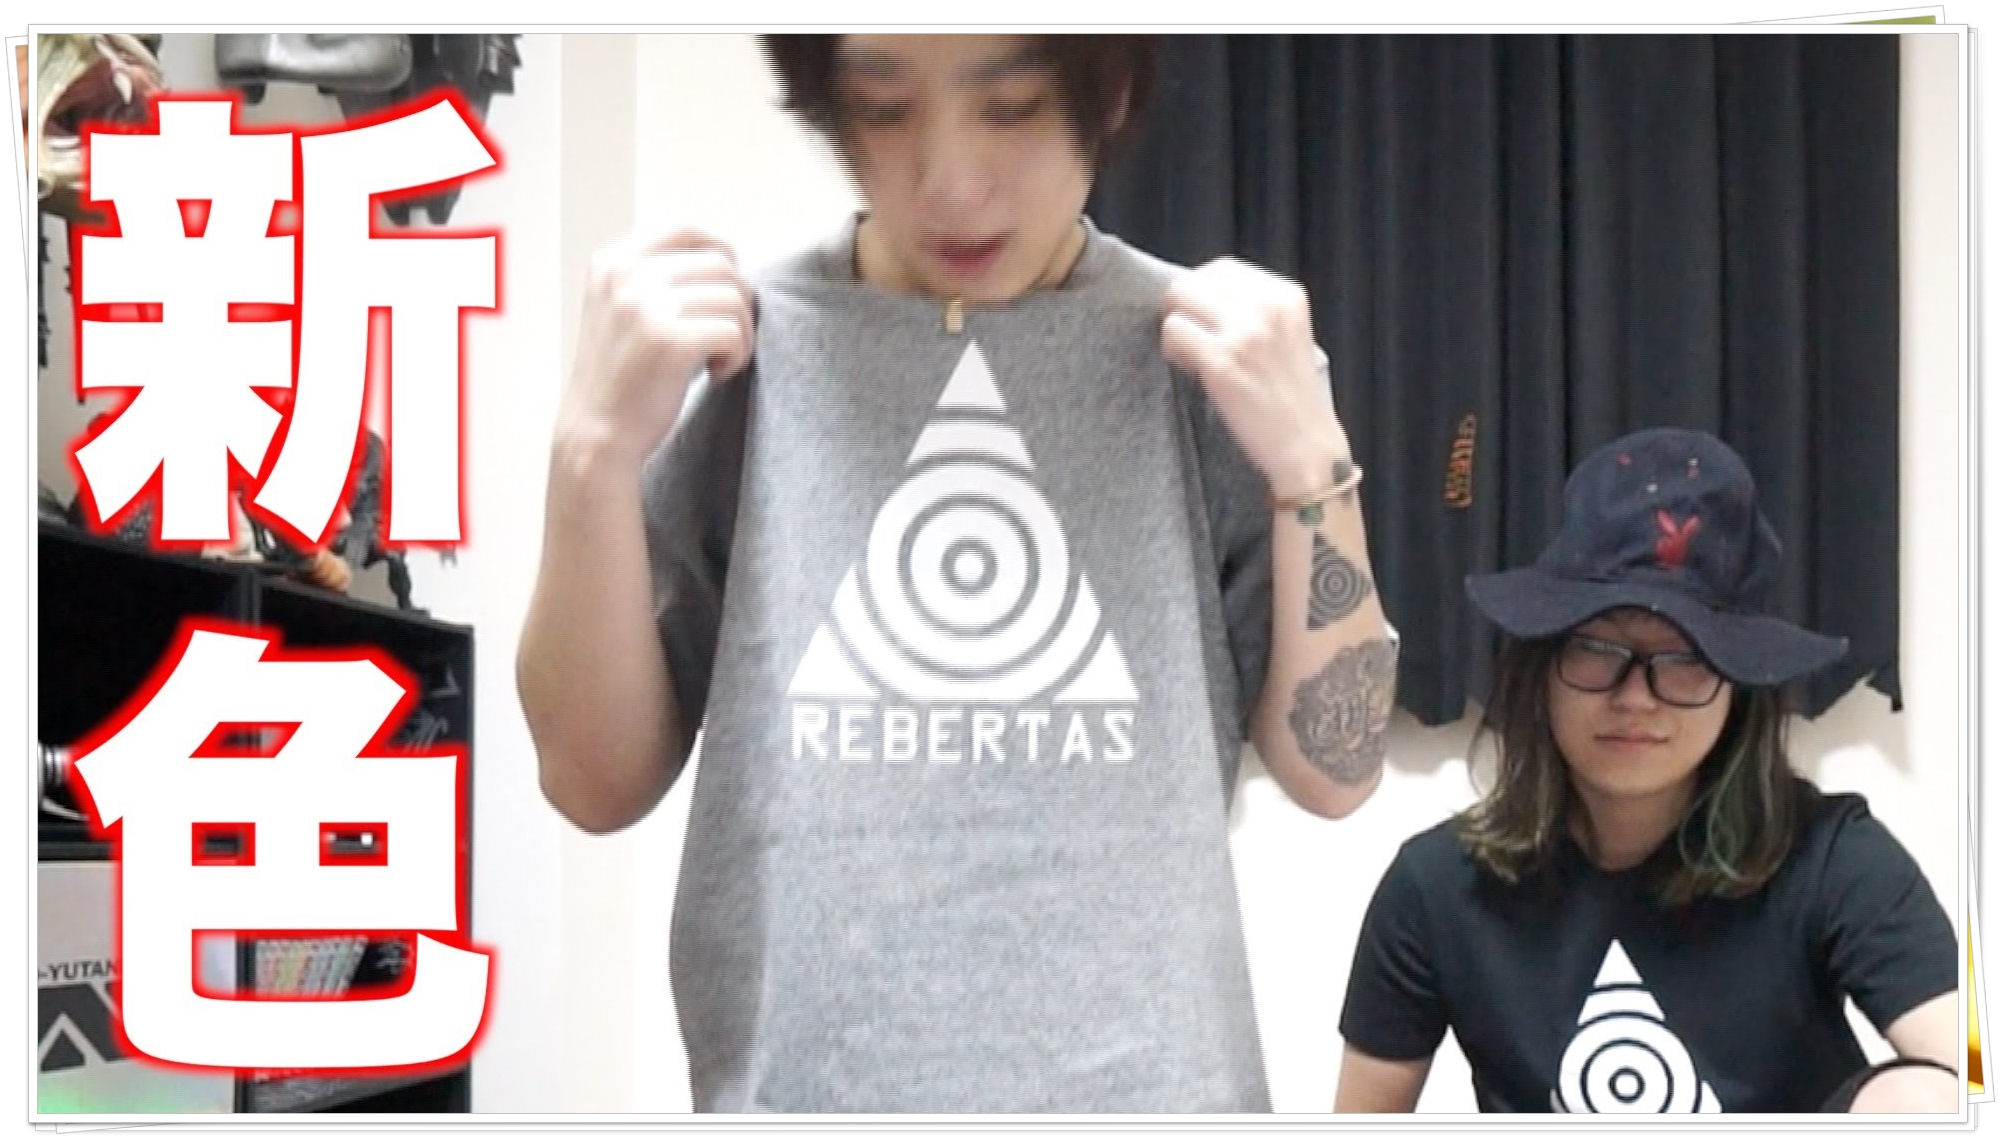 リベルタス、ロゴTシャツ再販&新色を発表!値段や買い方は?